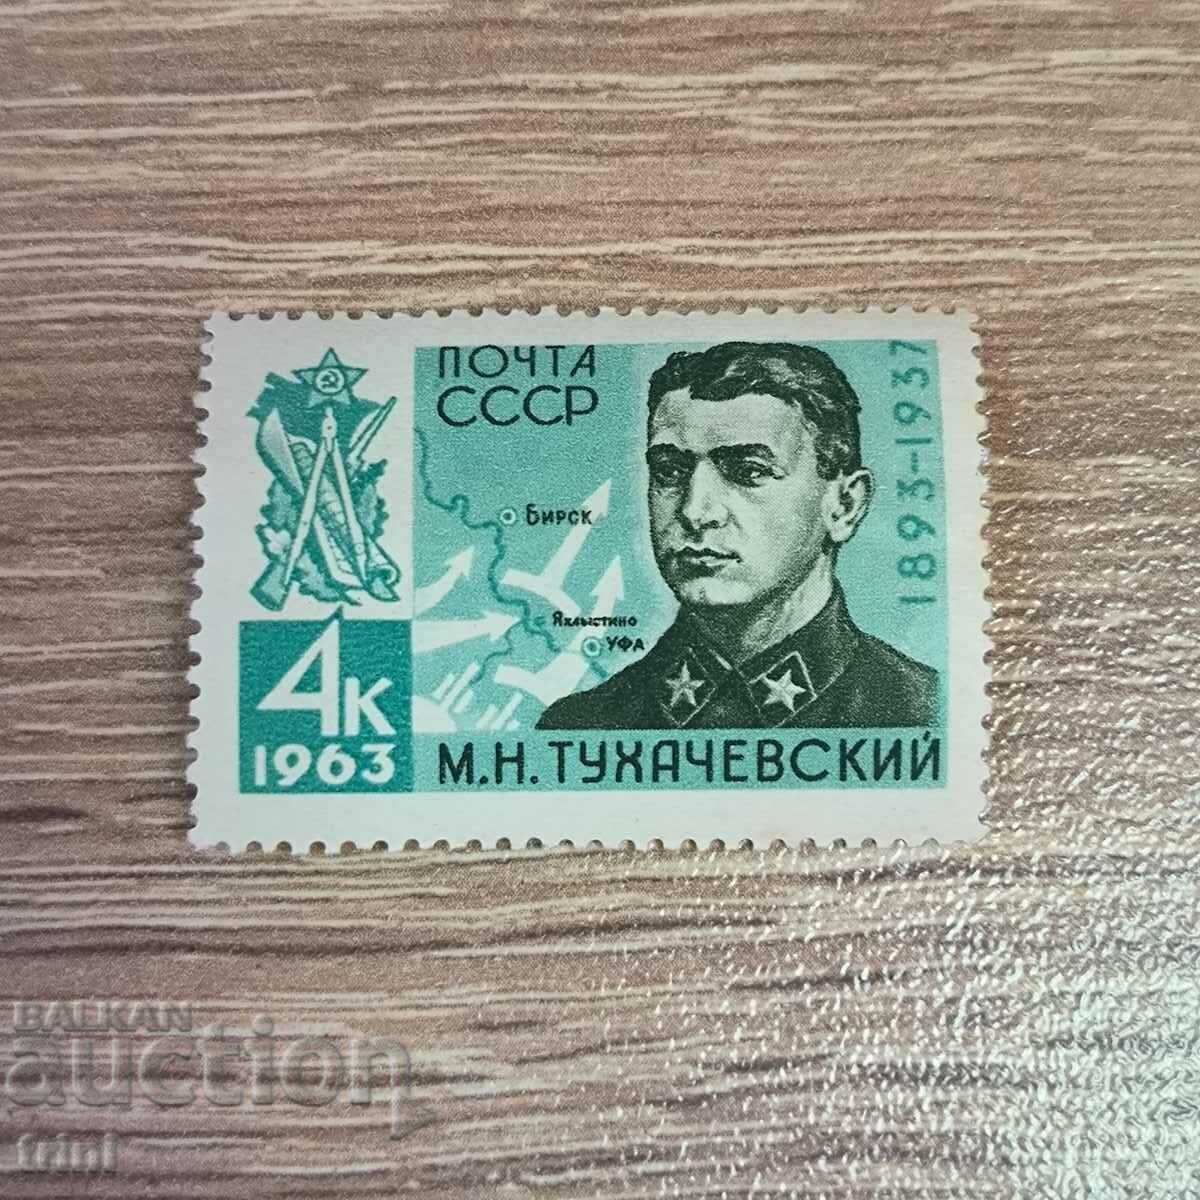 Προσωπικότητες της ΕΣΣΔ 70 χρόνια από τη γέννηση του Tukhachevsky 1963